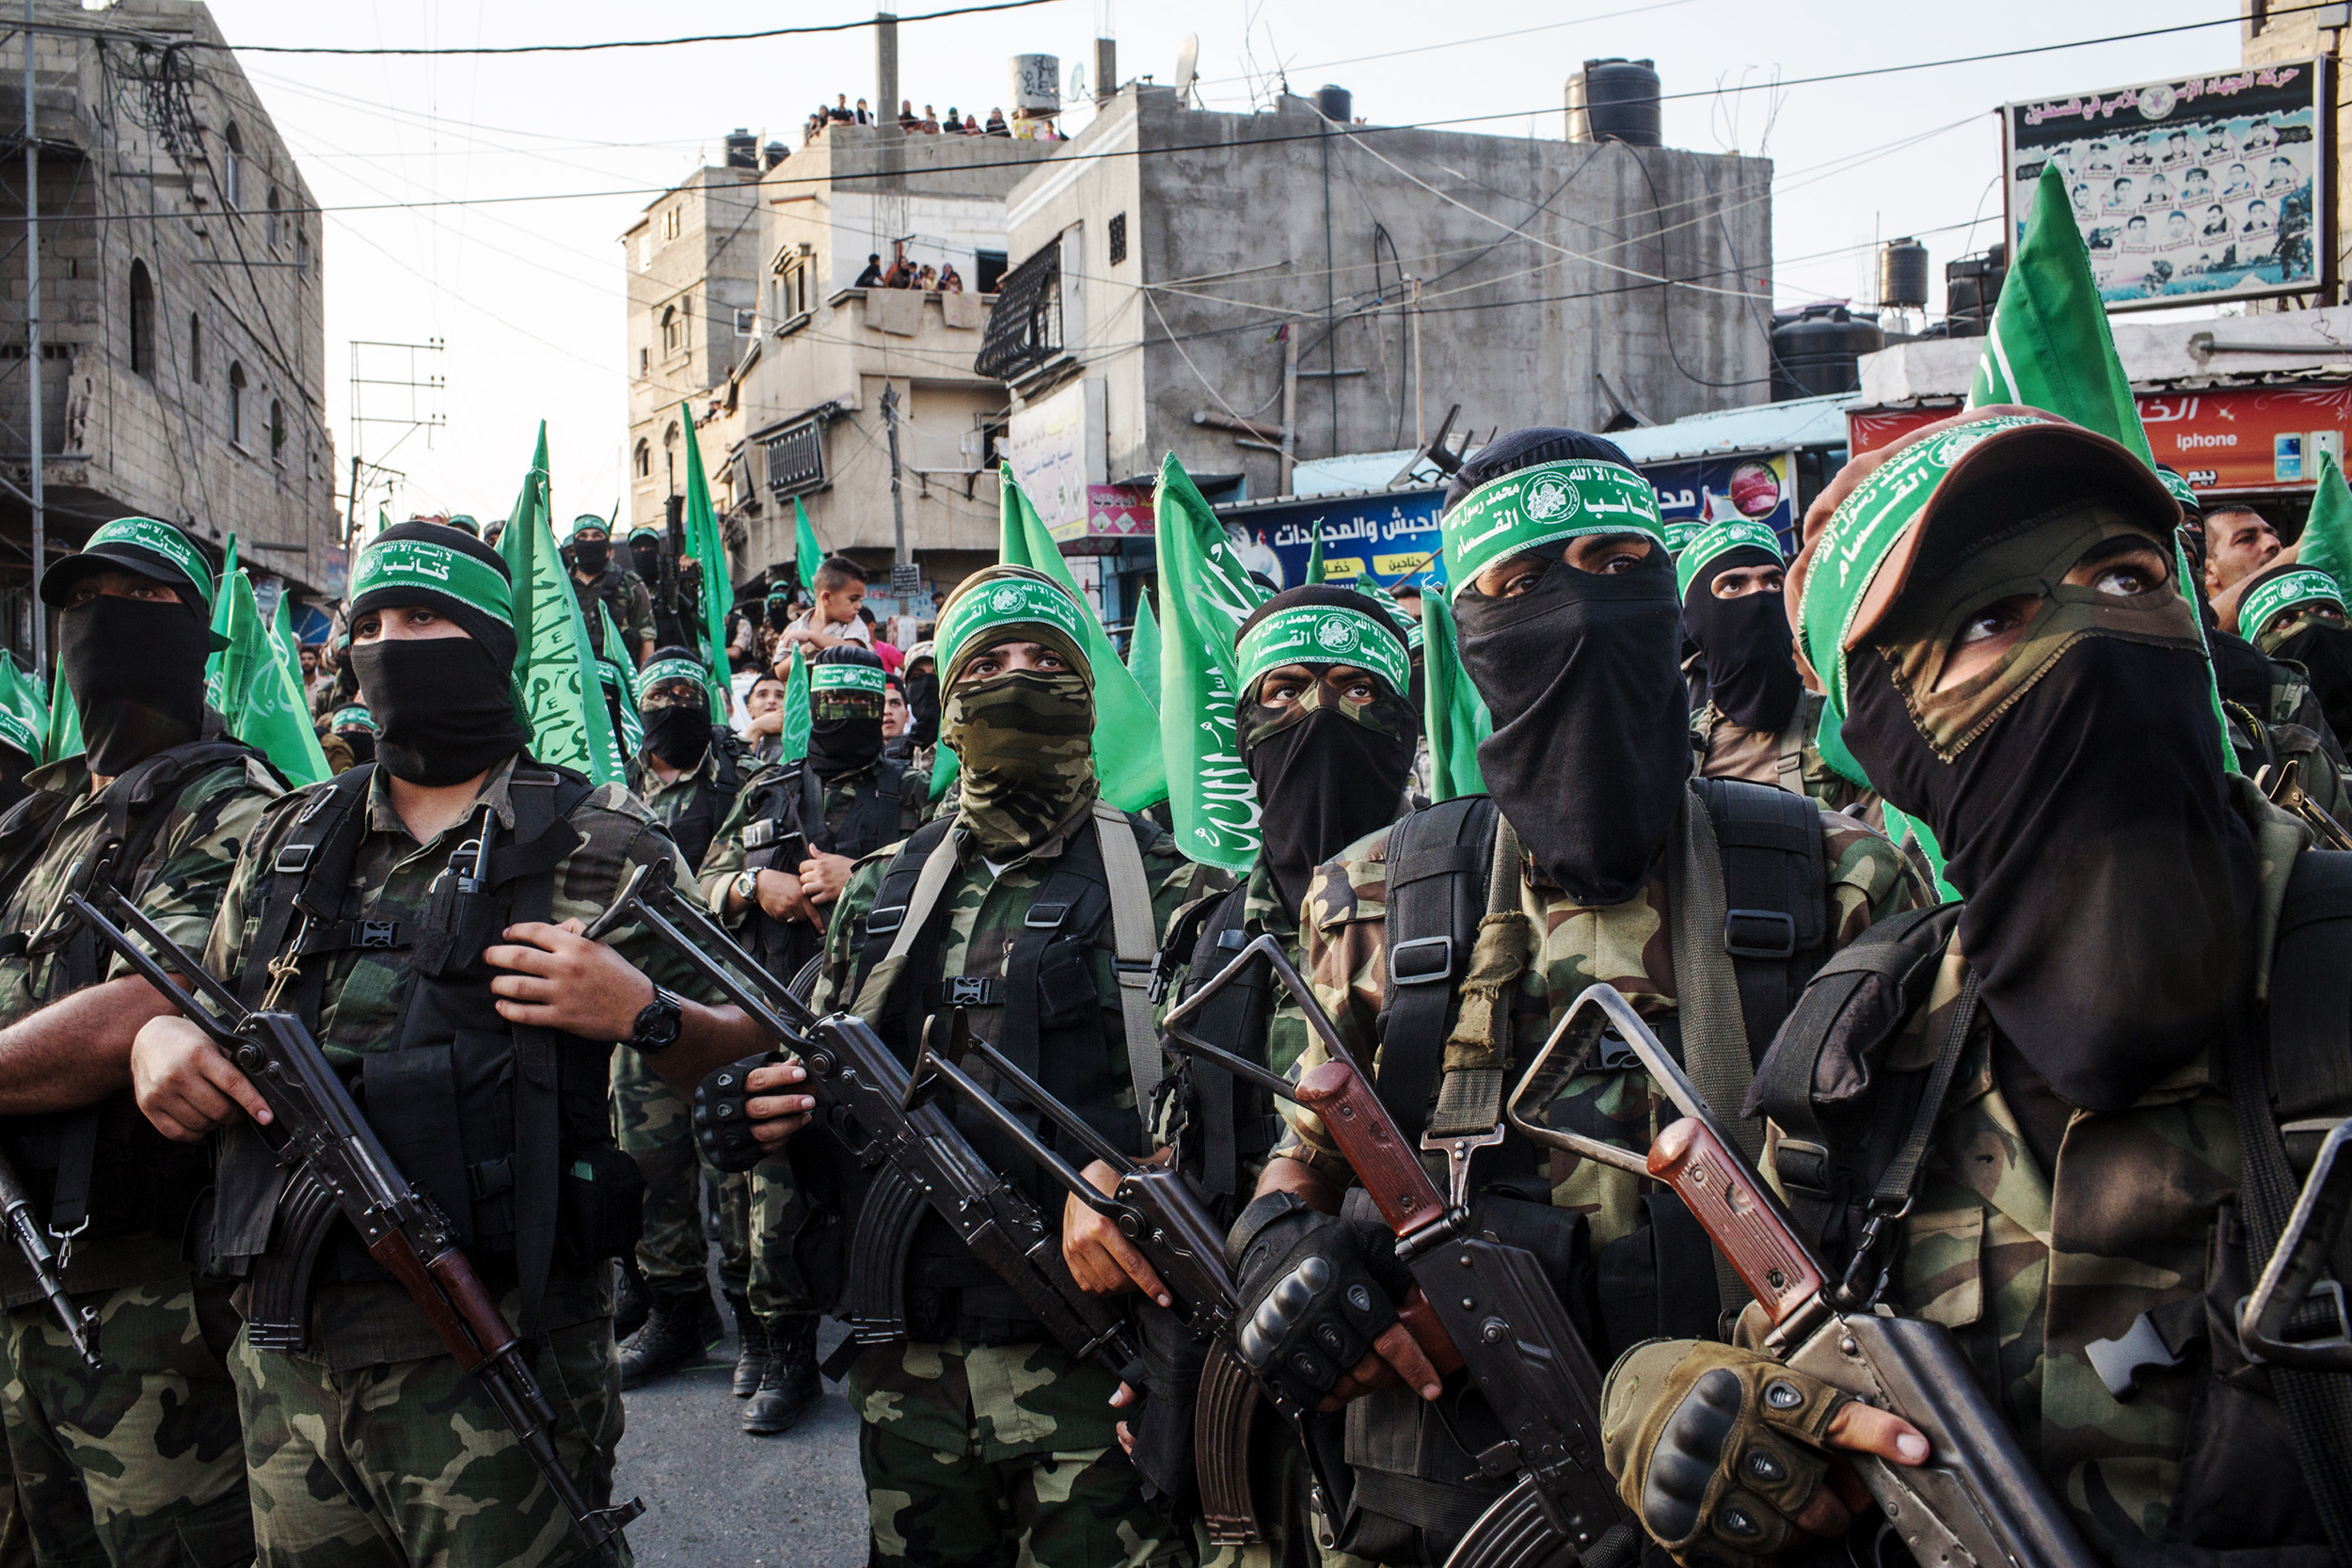 Ιράν και Χεμπζολάχ αποστασιοποιούνται από την Χαμάς – Ποιος ώθησε την οργάνωση να επιτεθεί στο Ισραήλ; – Ο ρόλος της Τουρκίας